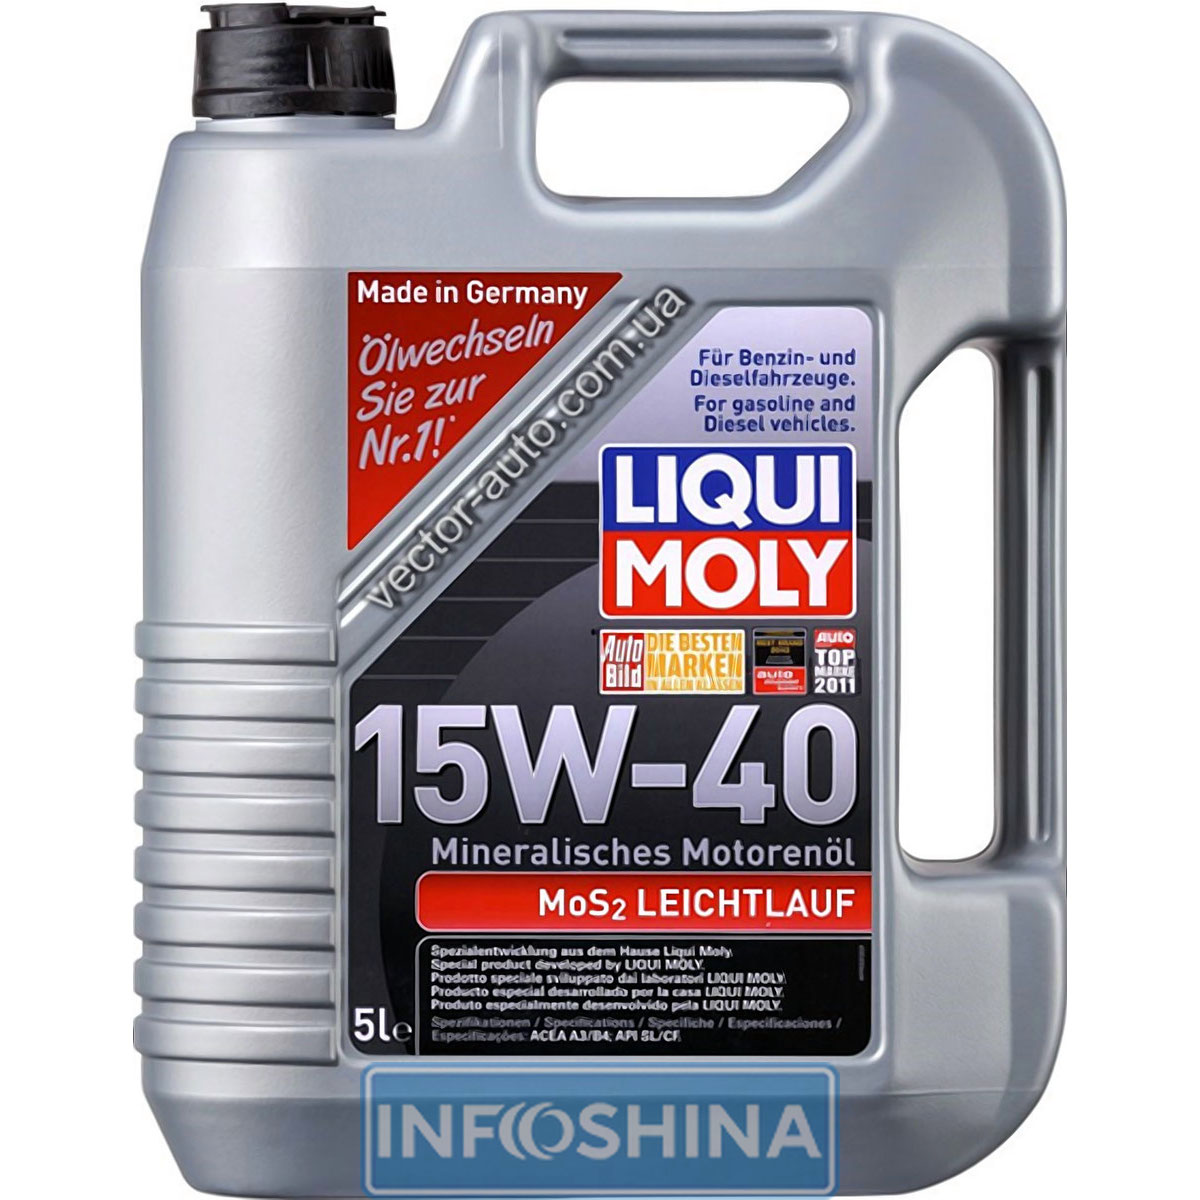 Купить масло Liqui Moly MoS2 Leichtlauf 15W-40 (5л)